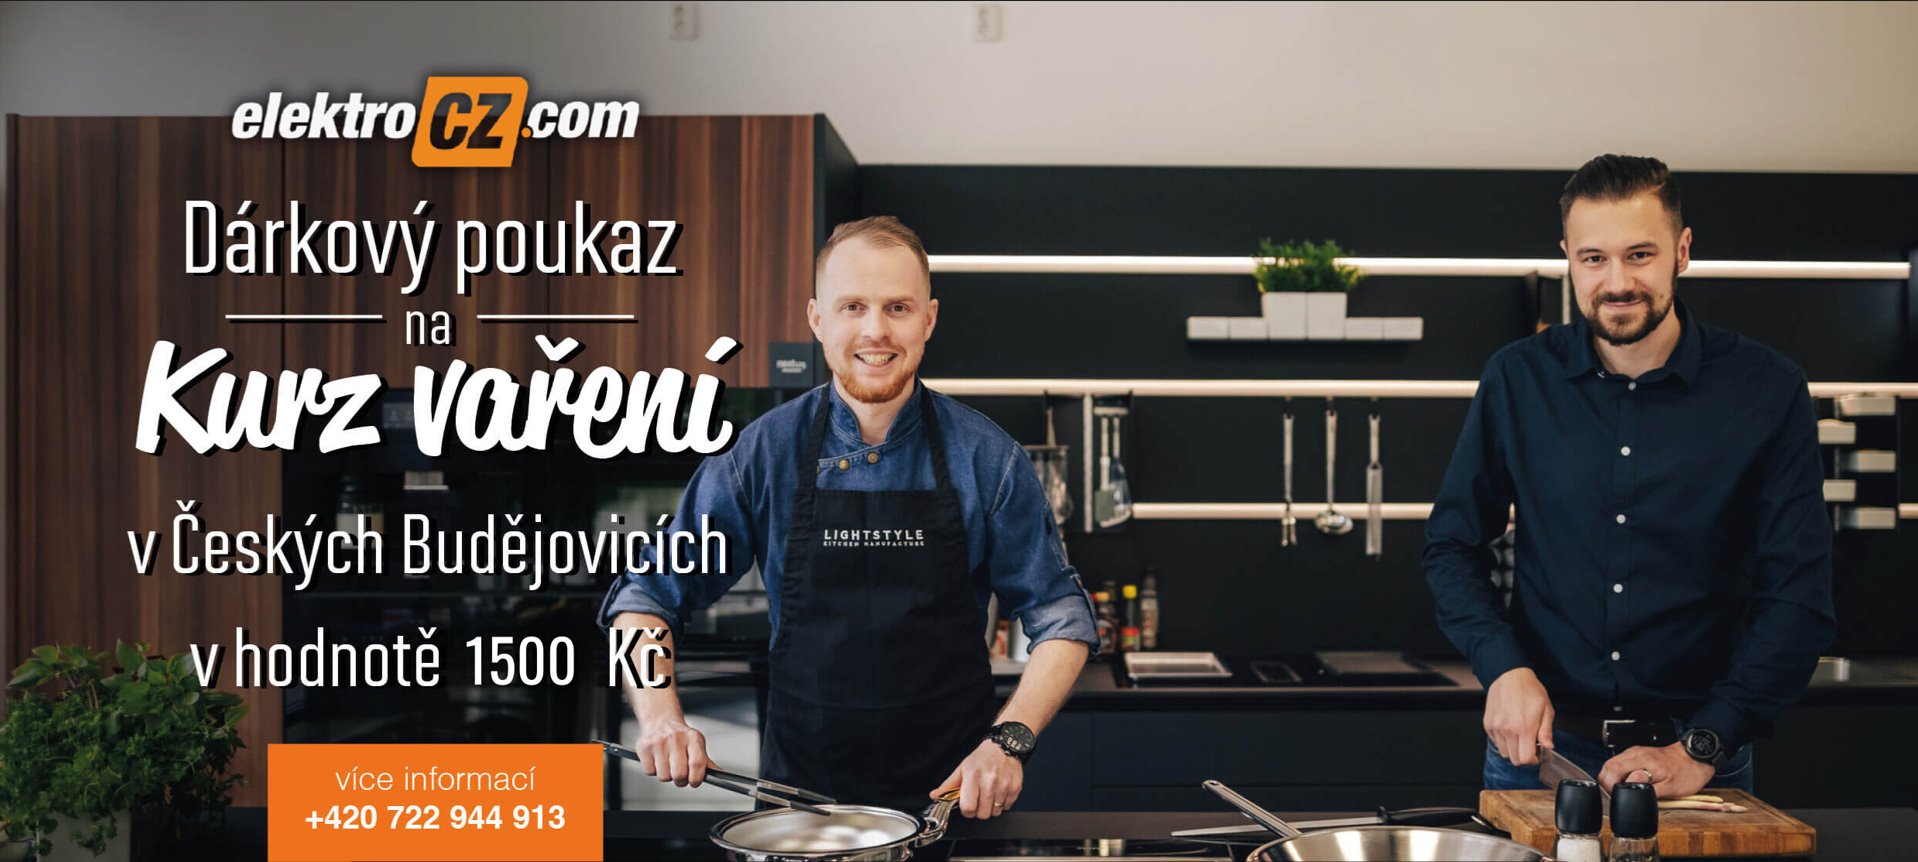 Dárkový poukaz na kurz vaření v Českých Budějovicích